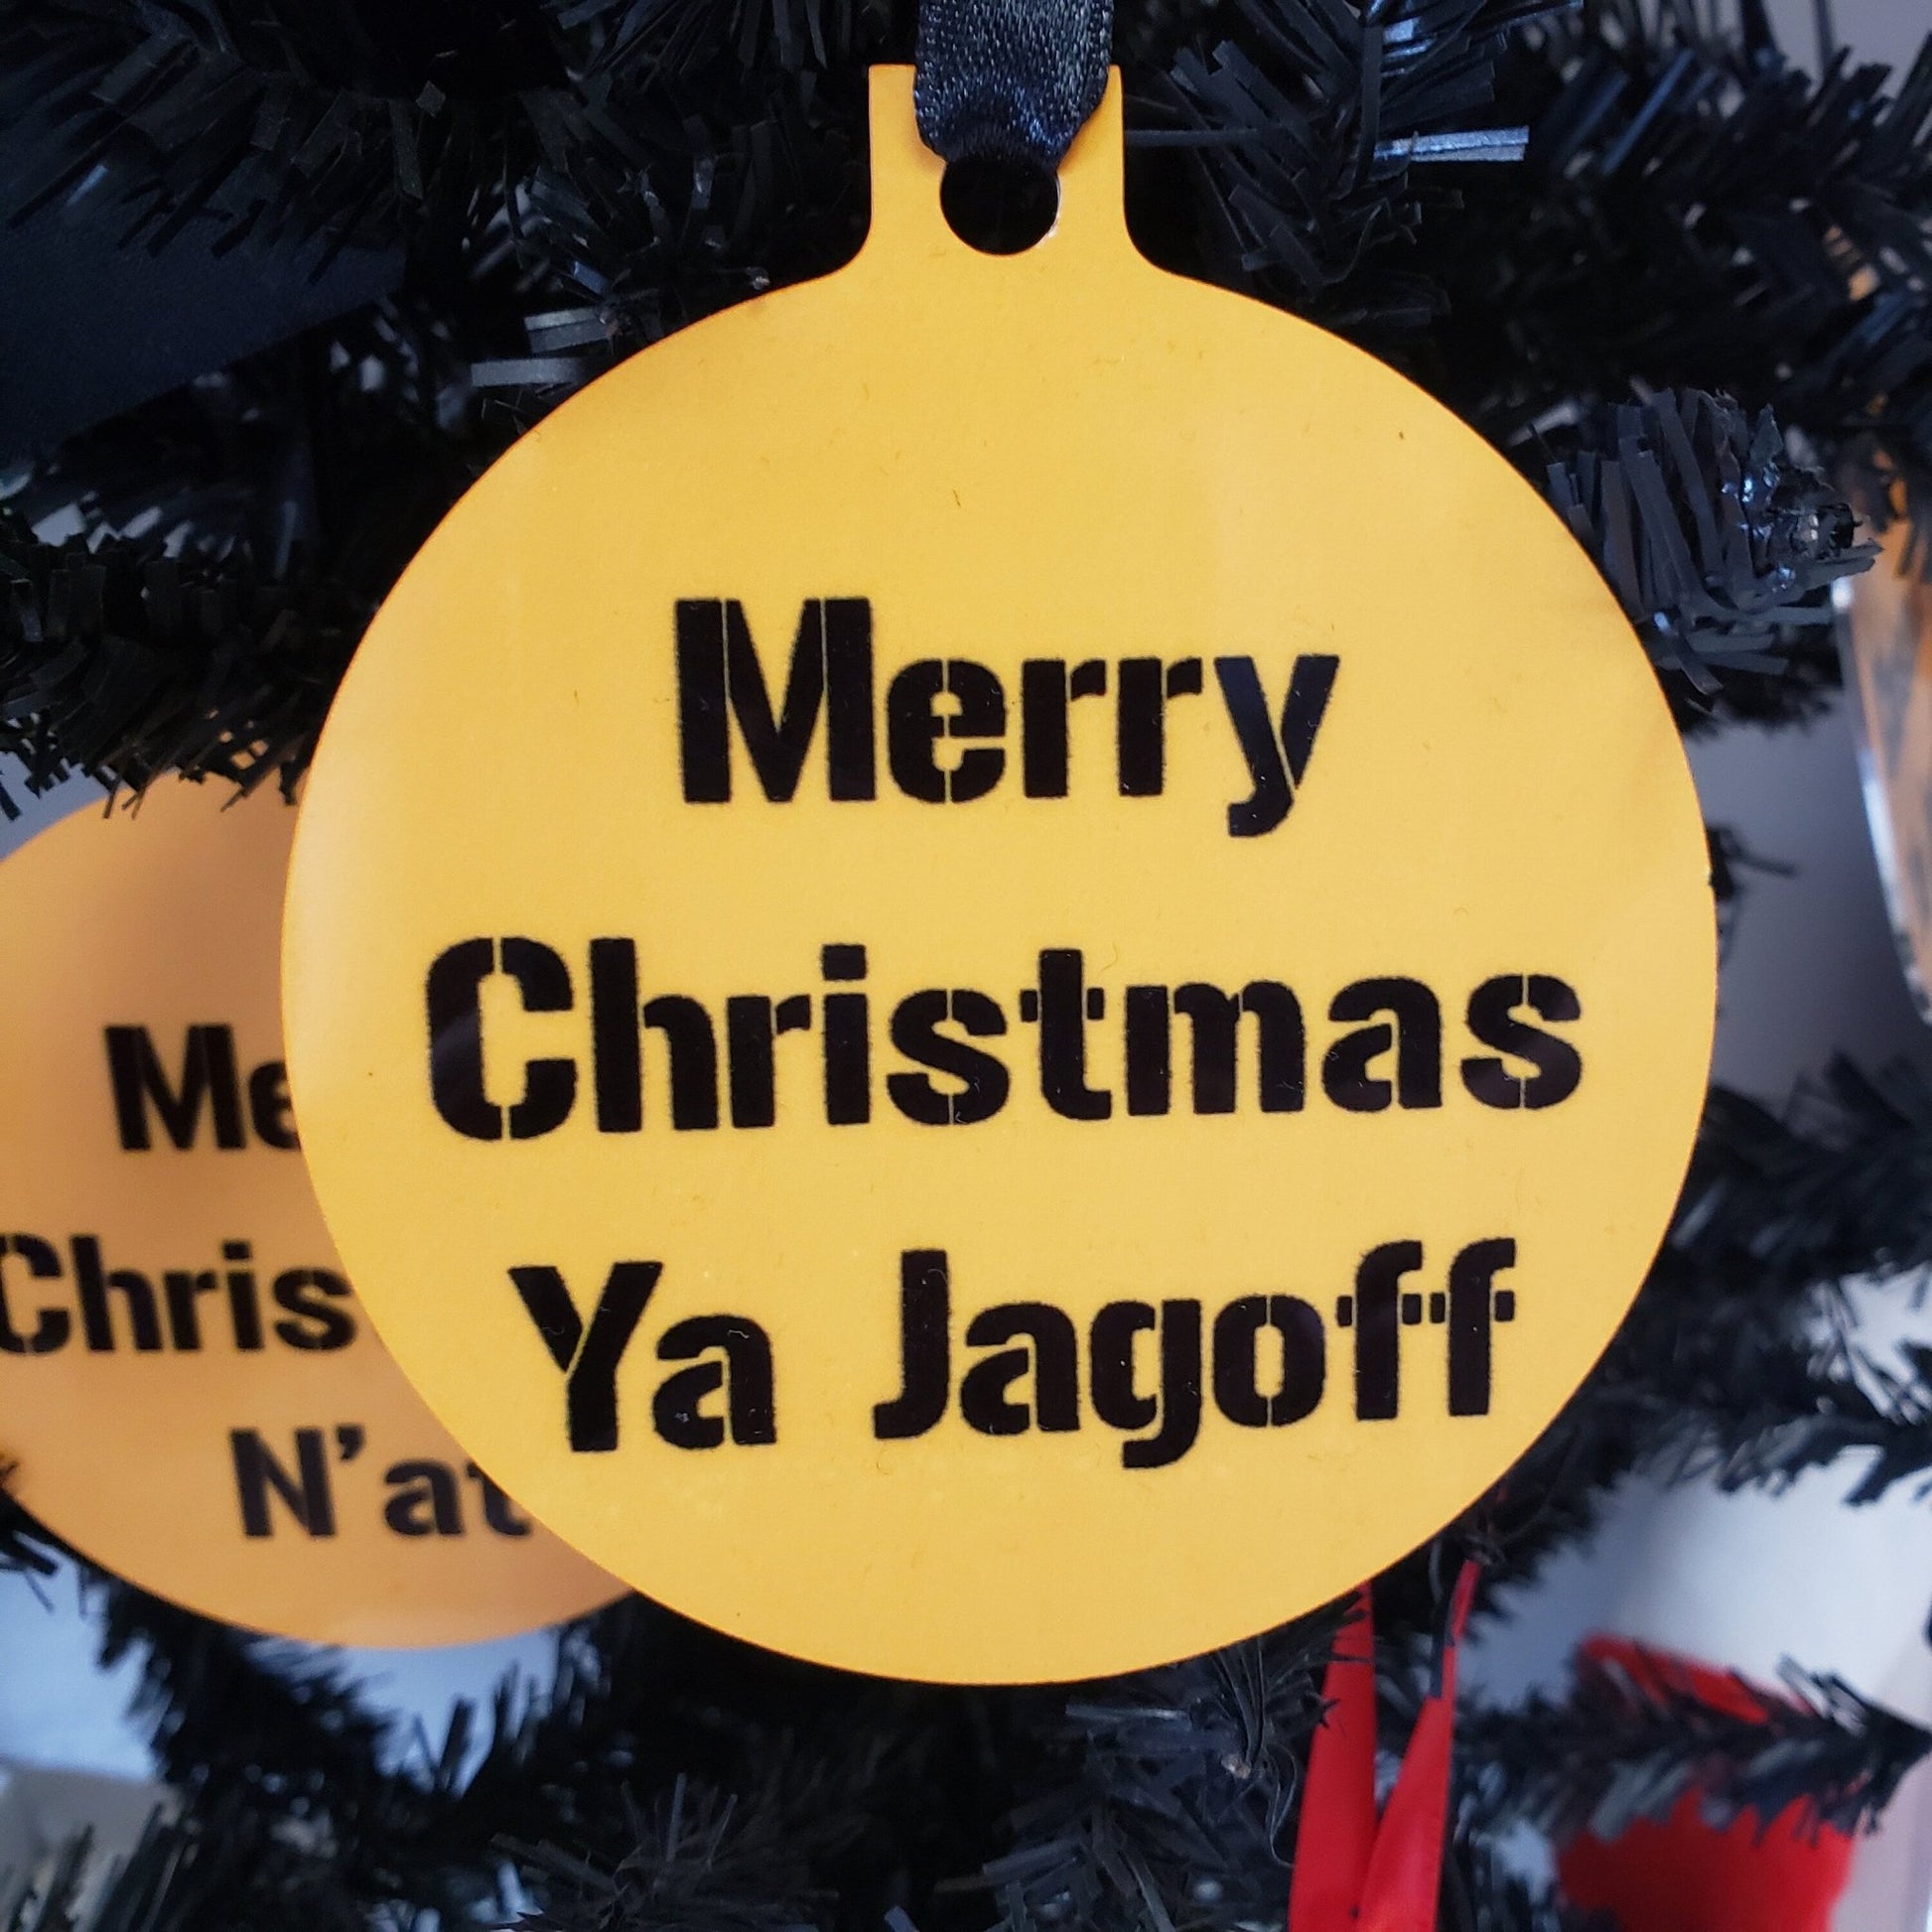 Christmas Oranment, Merry Christmas Ya Jagoff, Yinzer Christmas Yinz, N'at, Terrible Ornament, Pittsburghese Christmas Ornament Pittsburgh - SBS T Shop